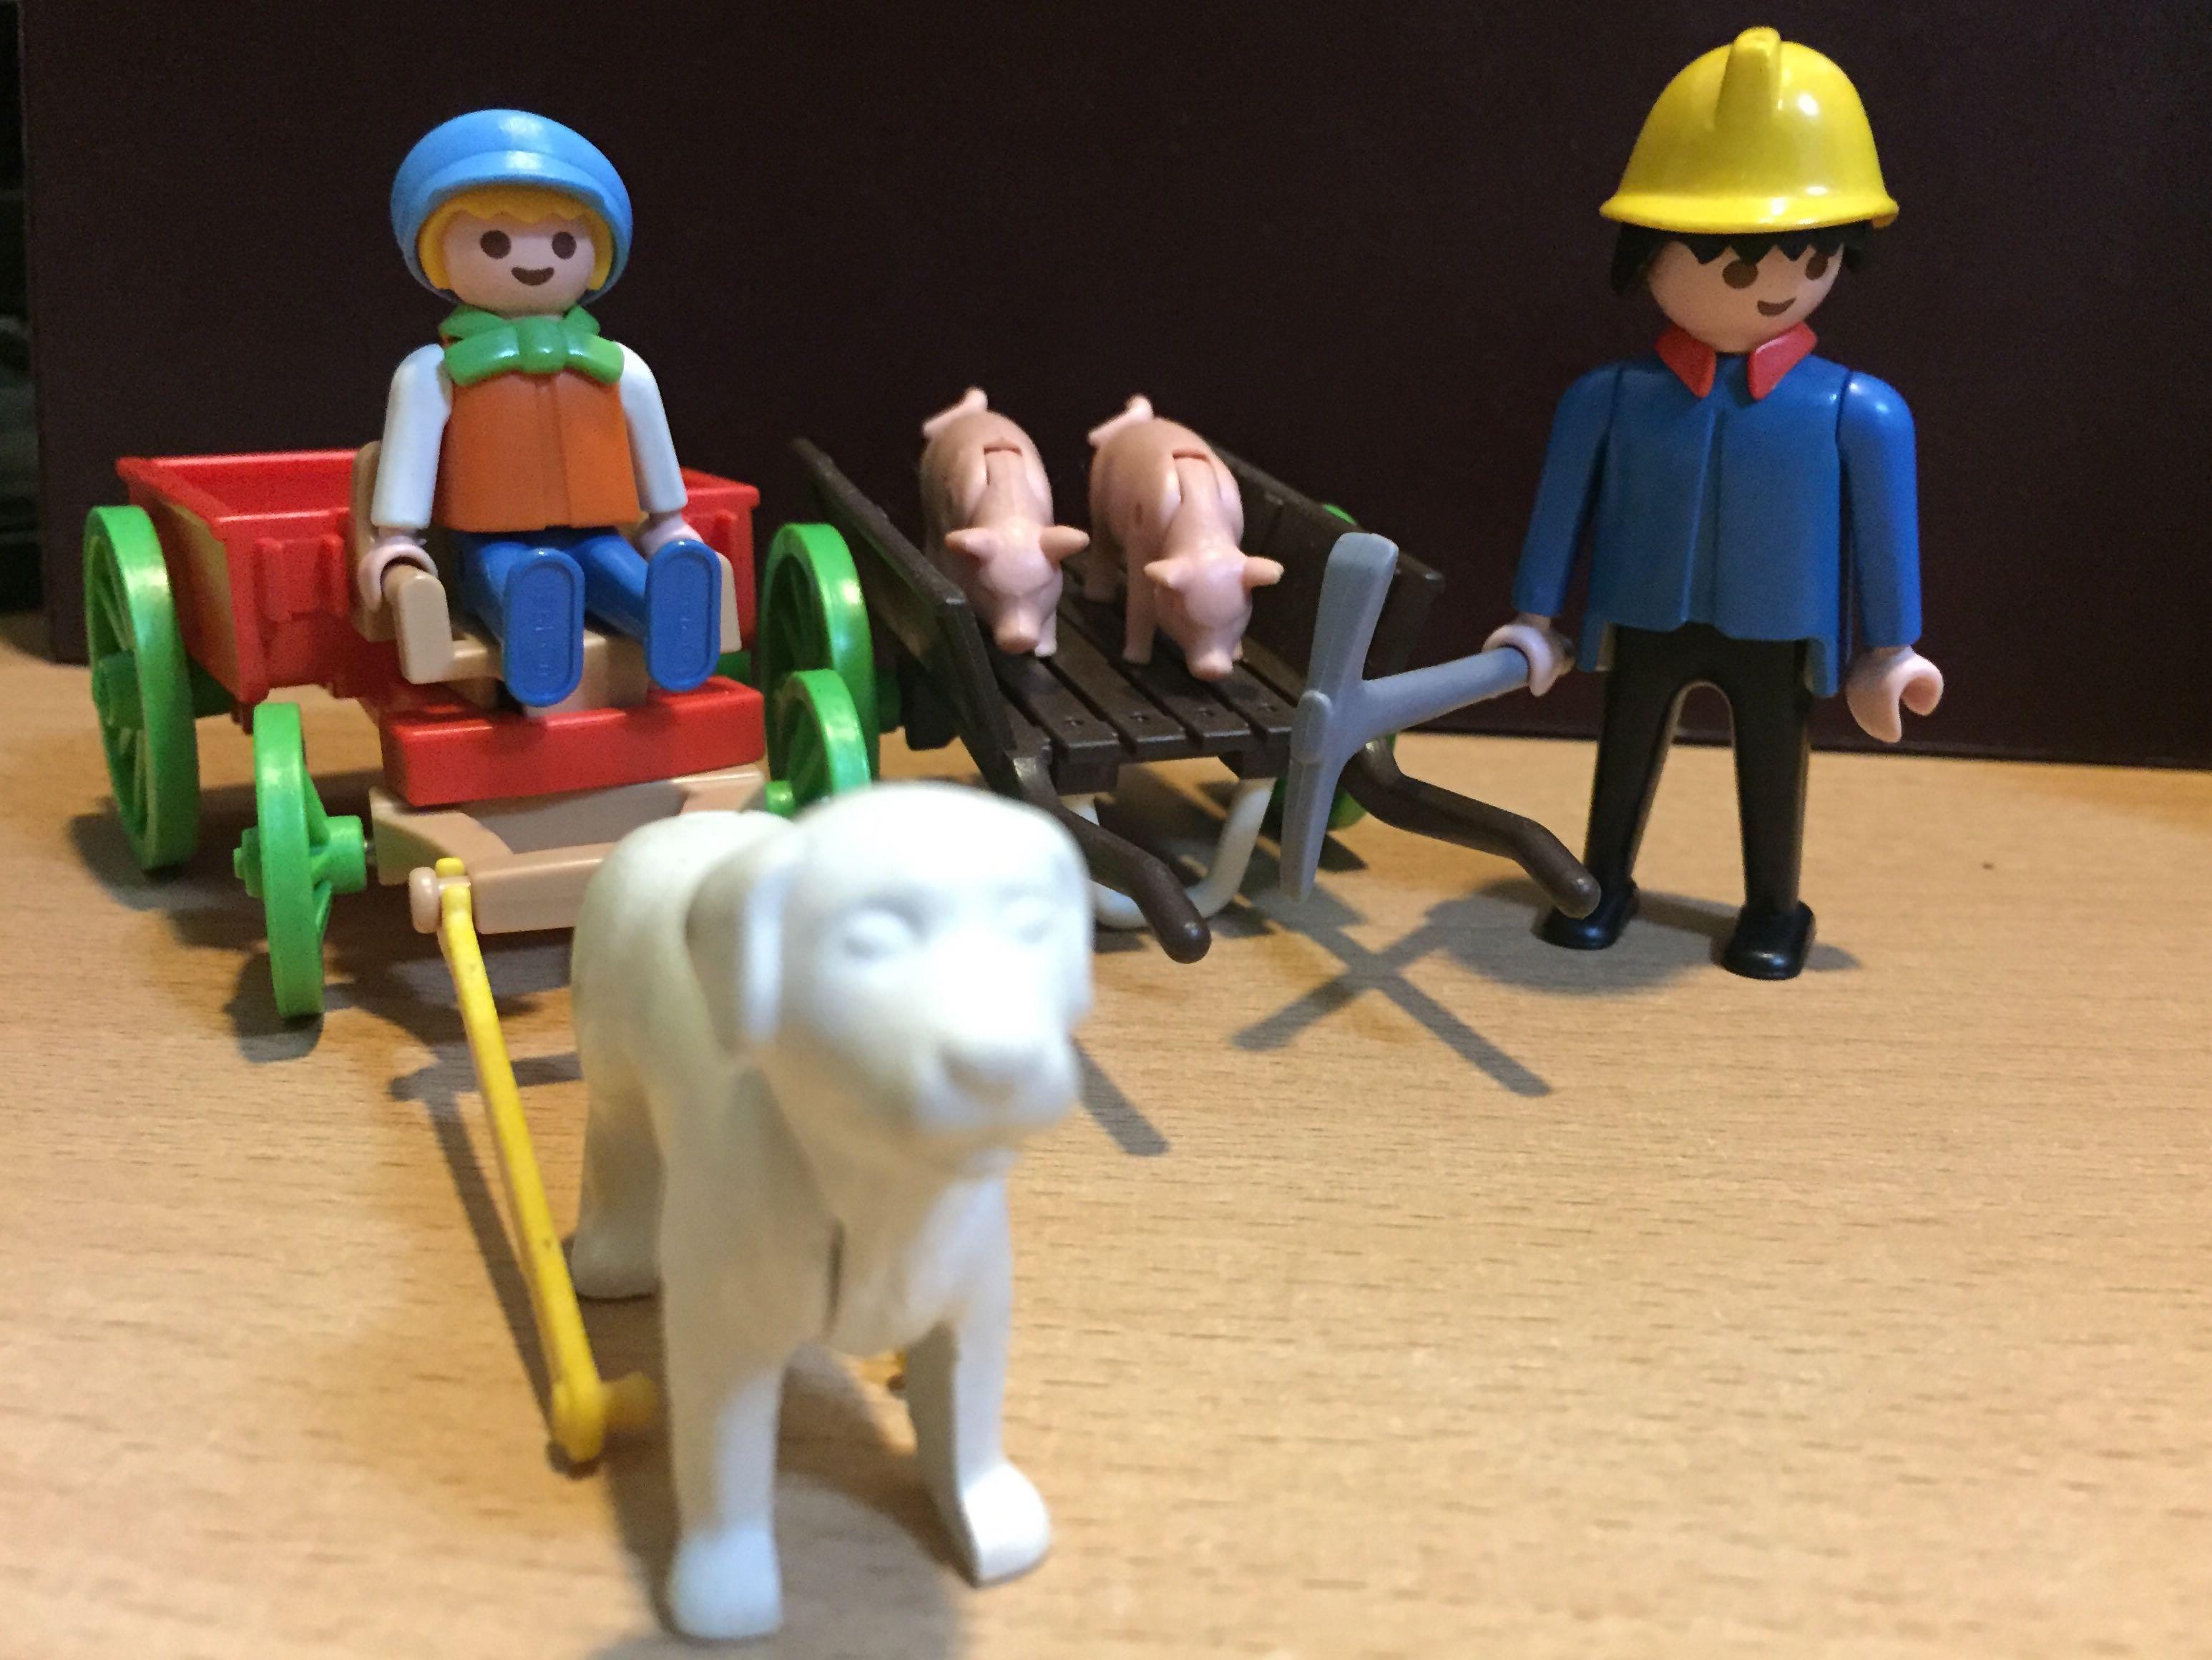 Playmobil geobra vintage animals set, Toys, Toys & Games on Carousell